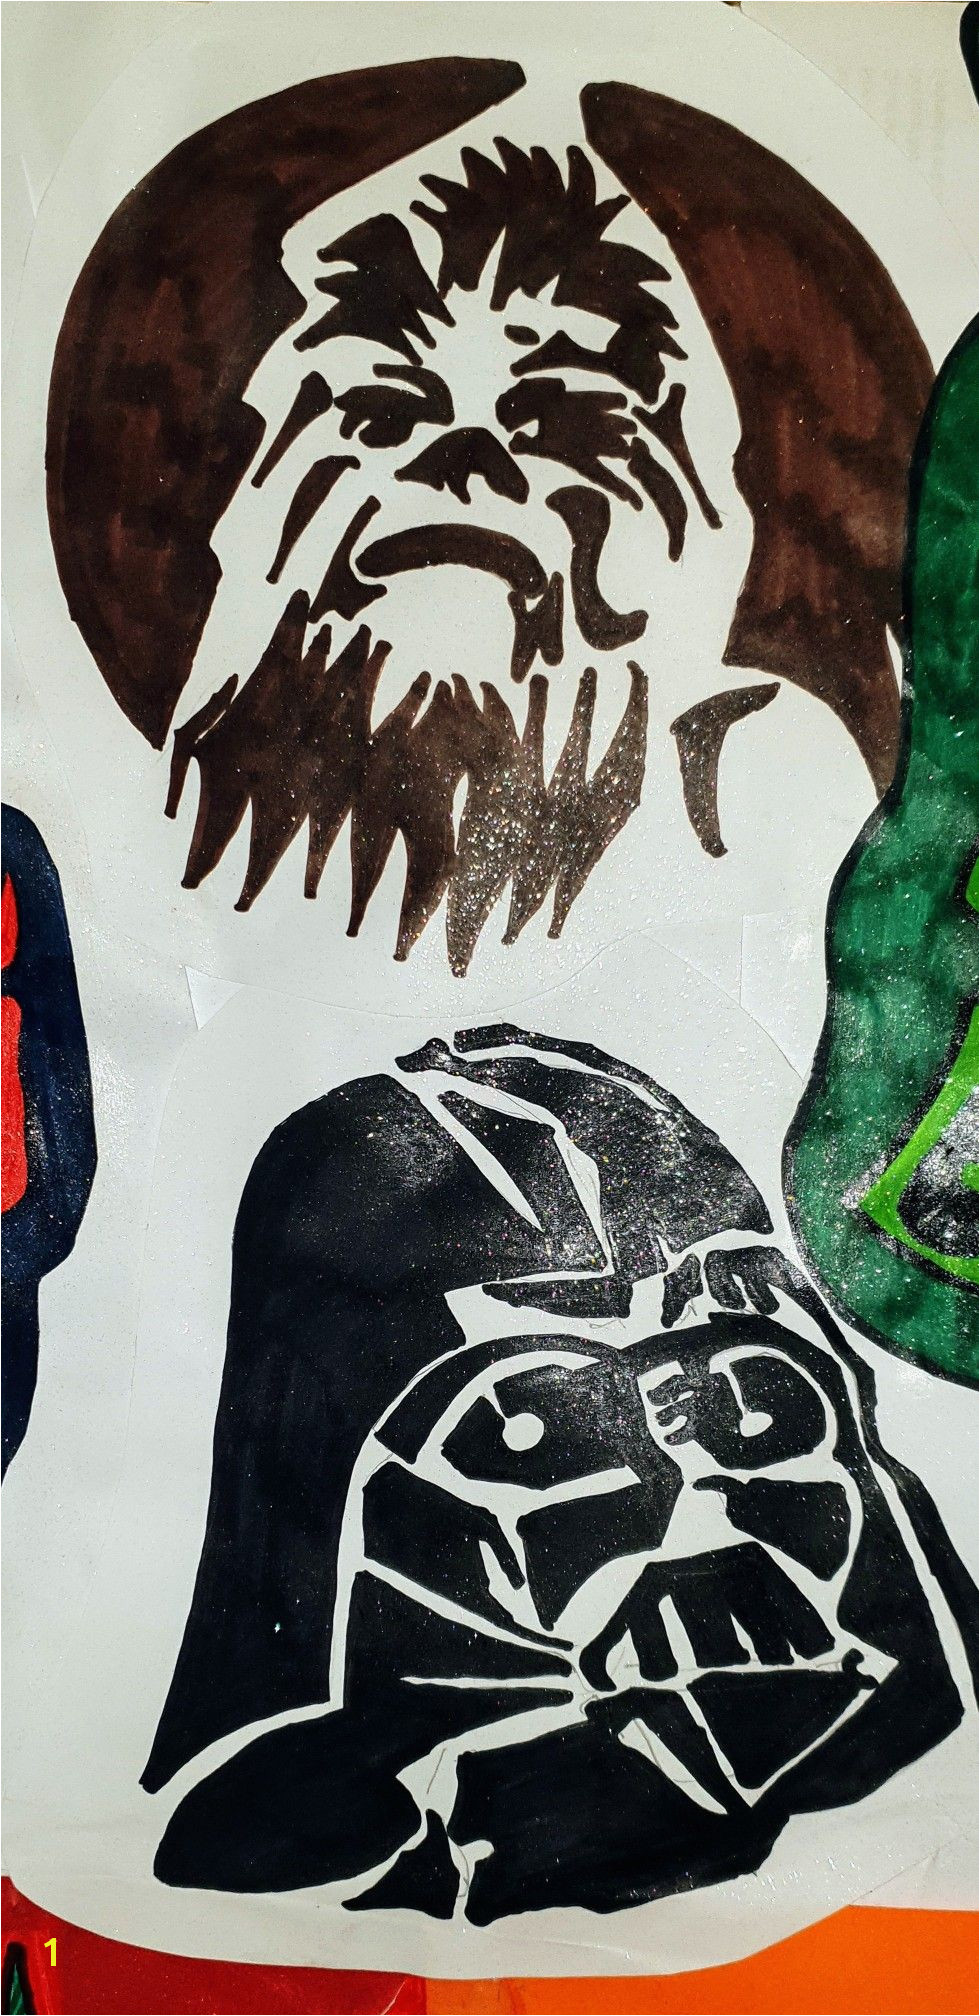 Stencils Star Wars Starwars Stenciling Star Wars Art Sketches